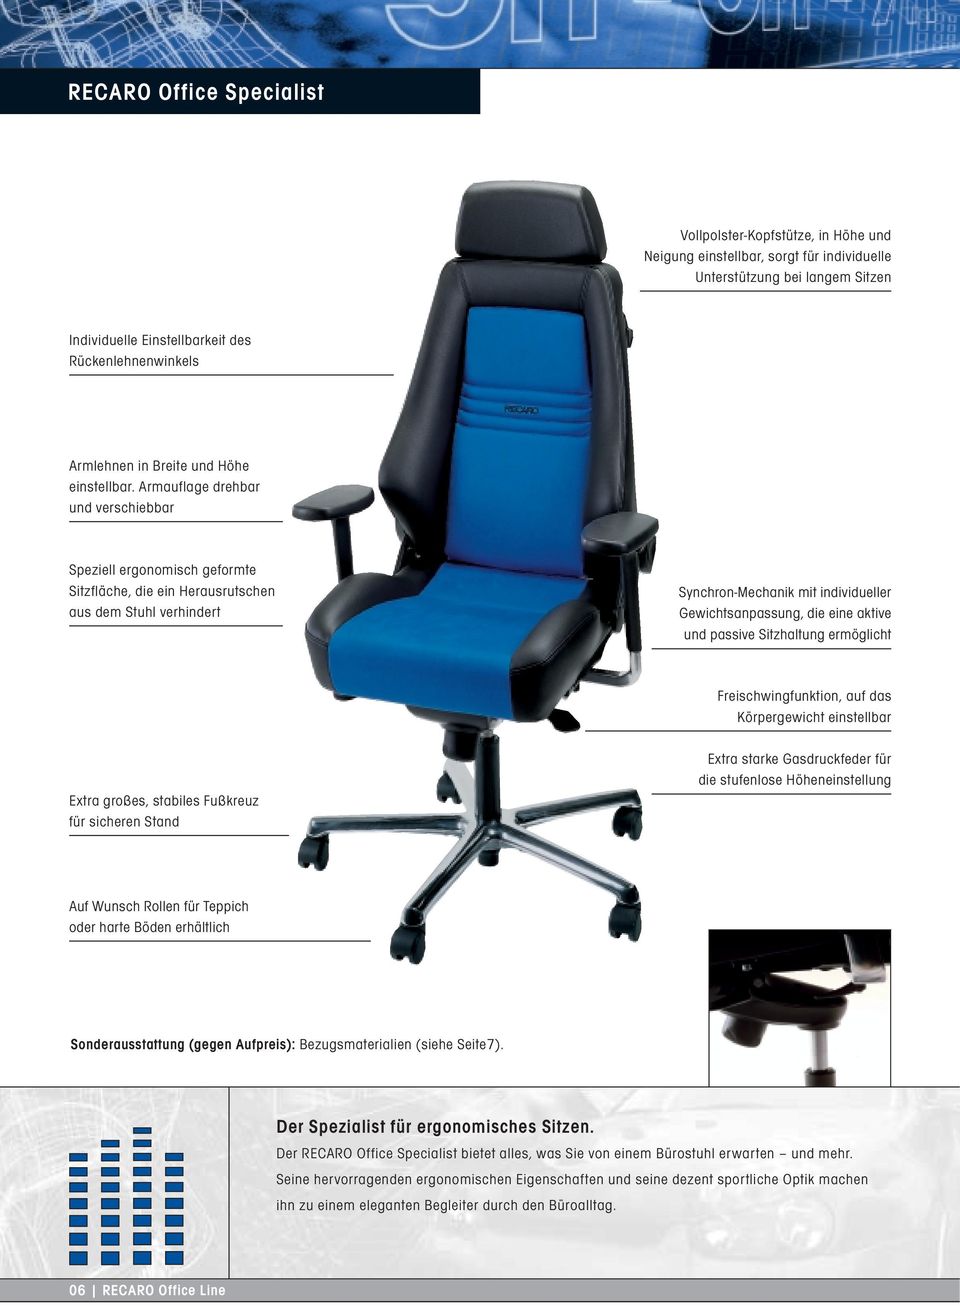 Armauflage drehbar und verschiebbar Speziell ergonomisch geformte Sitzfläche, die ein Herausrutschen aus dem Stuhl verhindert Synchron-Mechanik mit individueller Gewichtsanpassung, die eine aktive